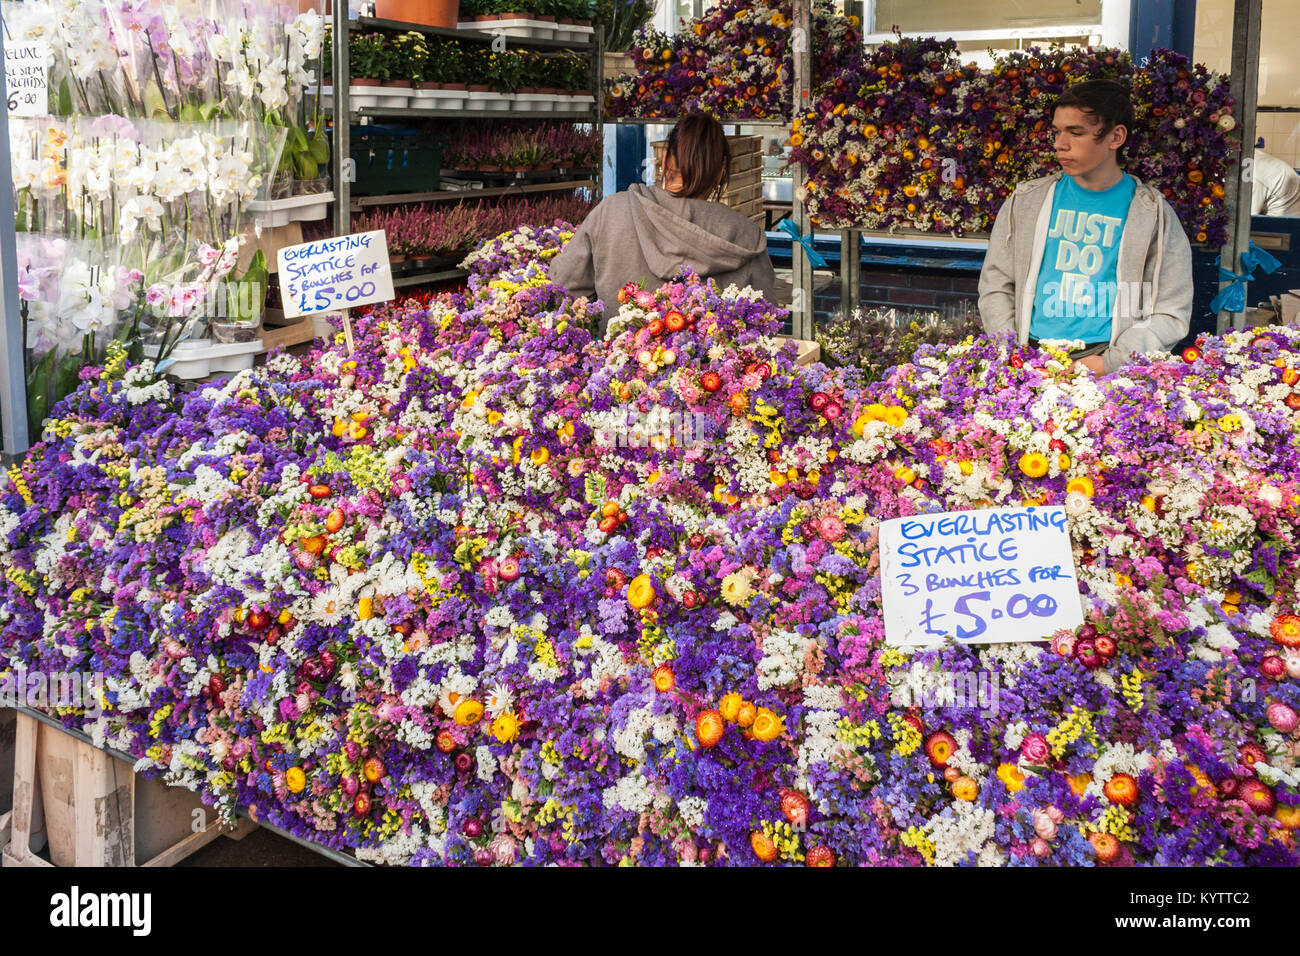 Columbia Road Flower Market Stall con commercianti che vendono la statice eterna, Columbia Rd, Londra, Inghilterra, GB, Regno Unito Foto Stock